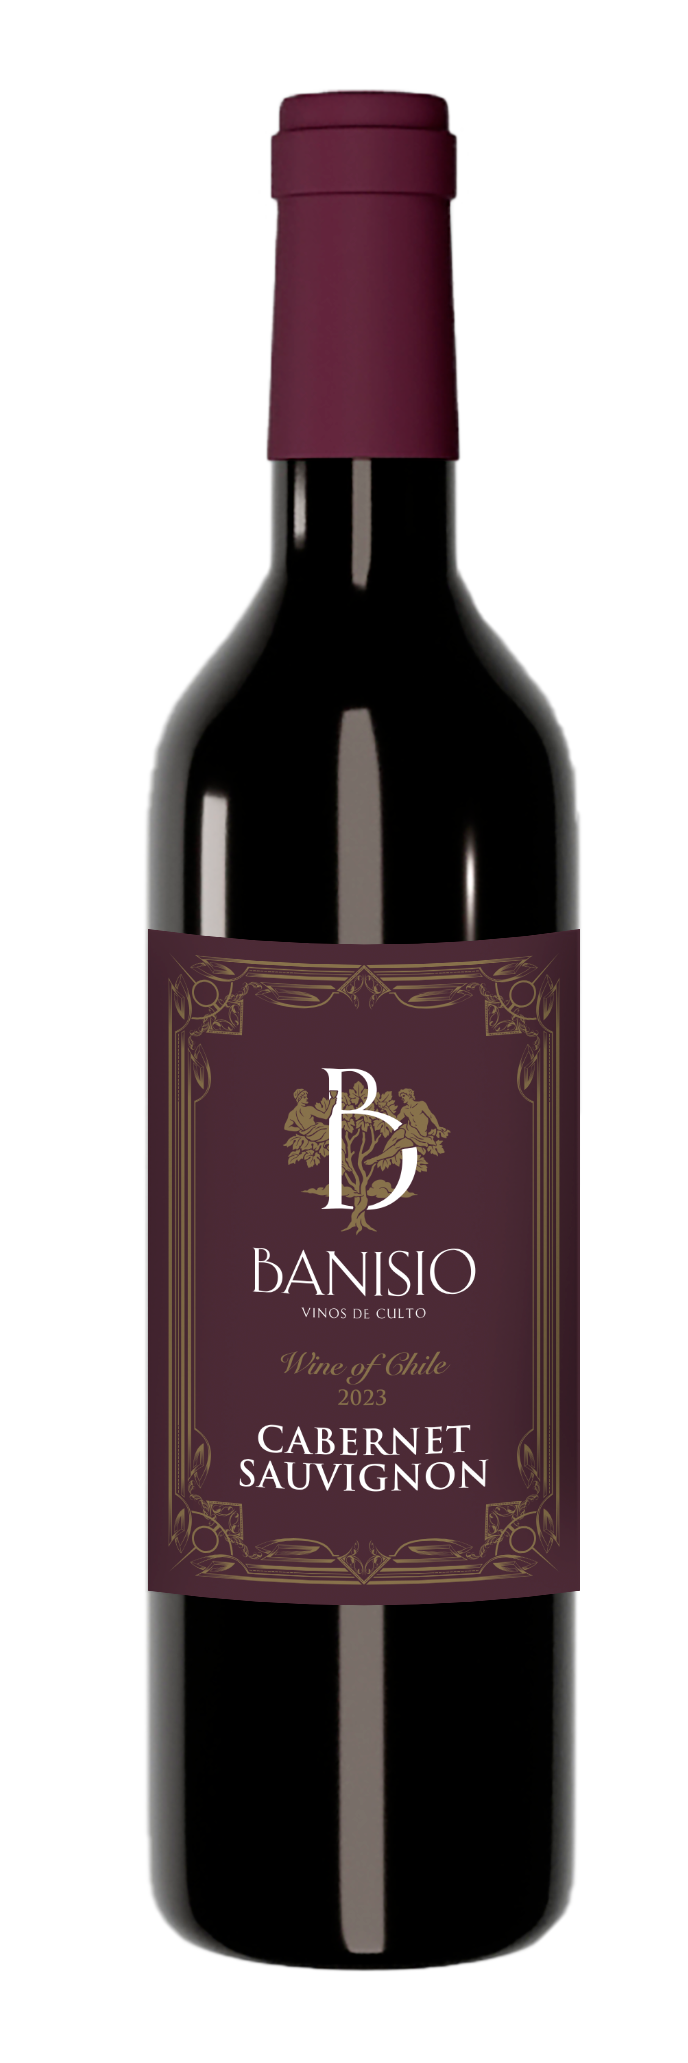 Wine from Chile - Cabernet Sauvignon - Banisio